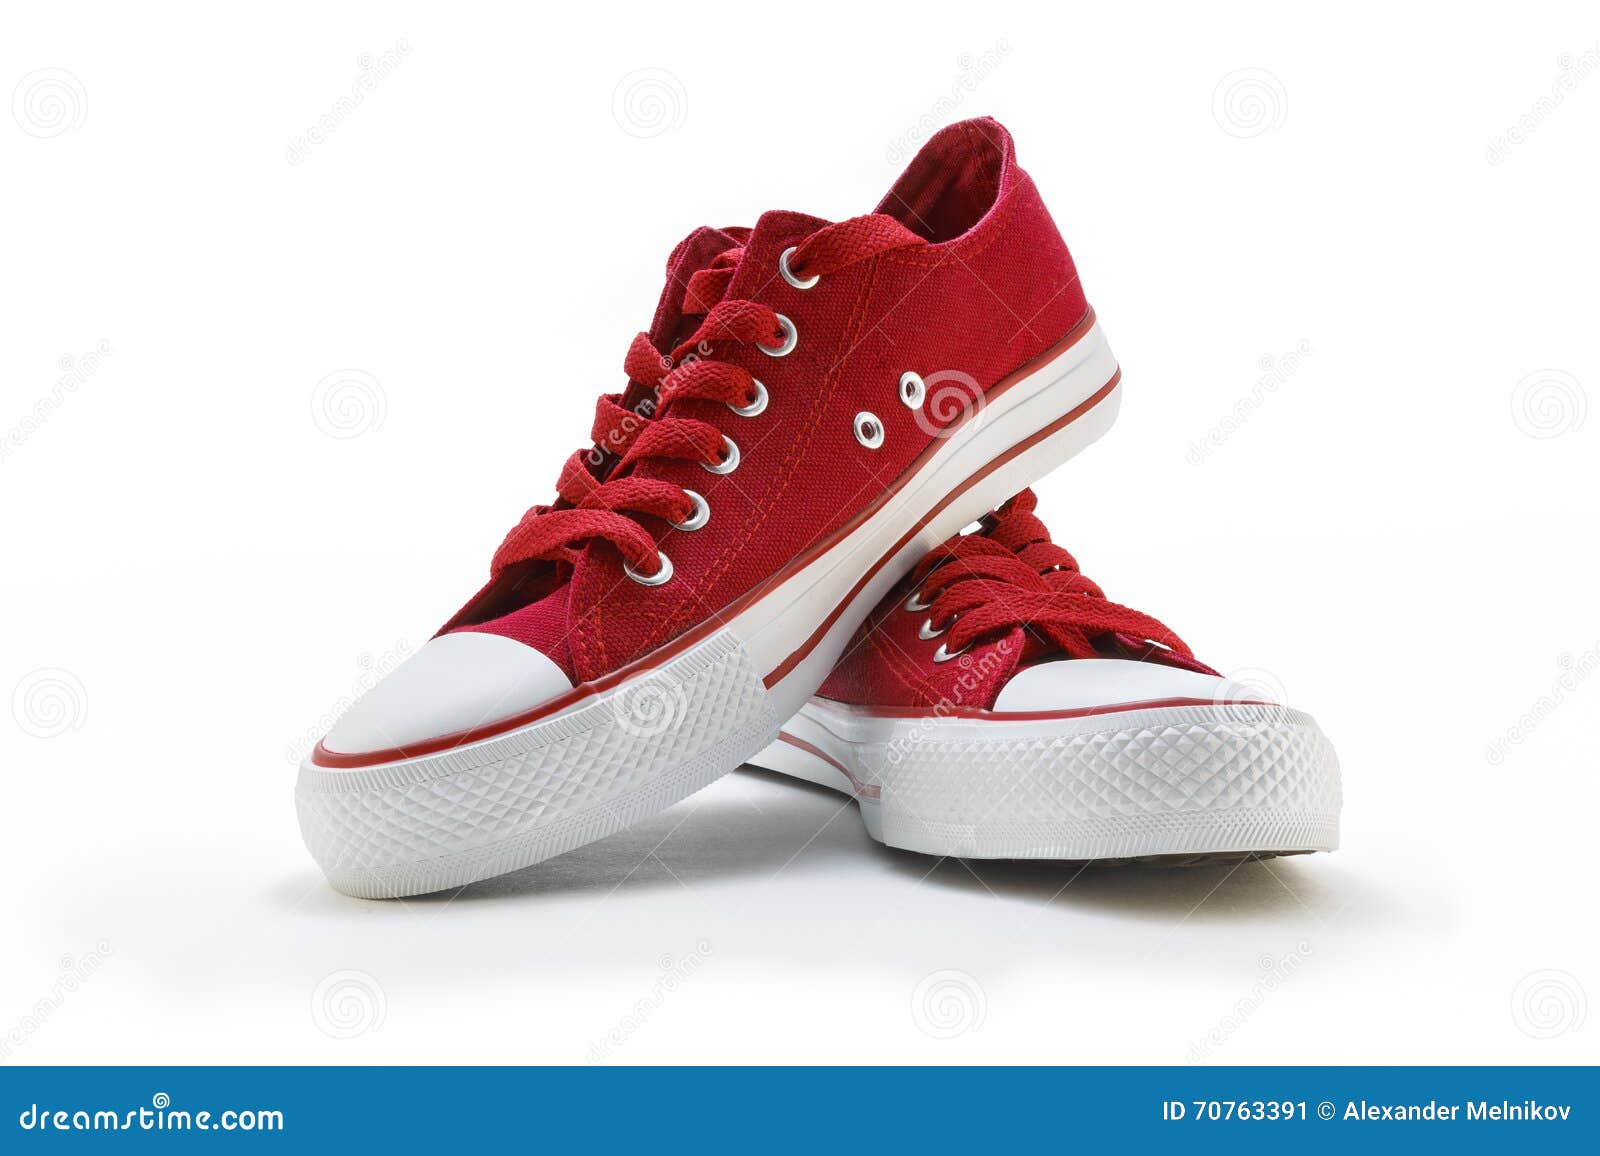 Rode Schoenen Op Een Witte Achtergrond (geen Naam, Geen Die Brande, in Cnina Gemaakt) Stock Afbeelding - Image of geïsoleerd, paar: 70763391